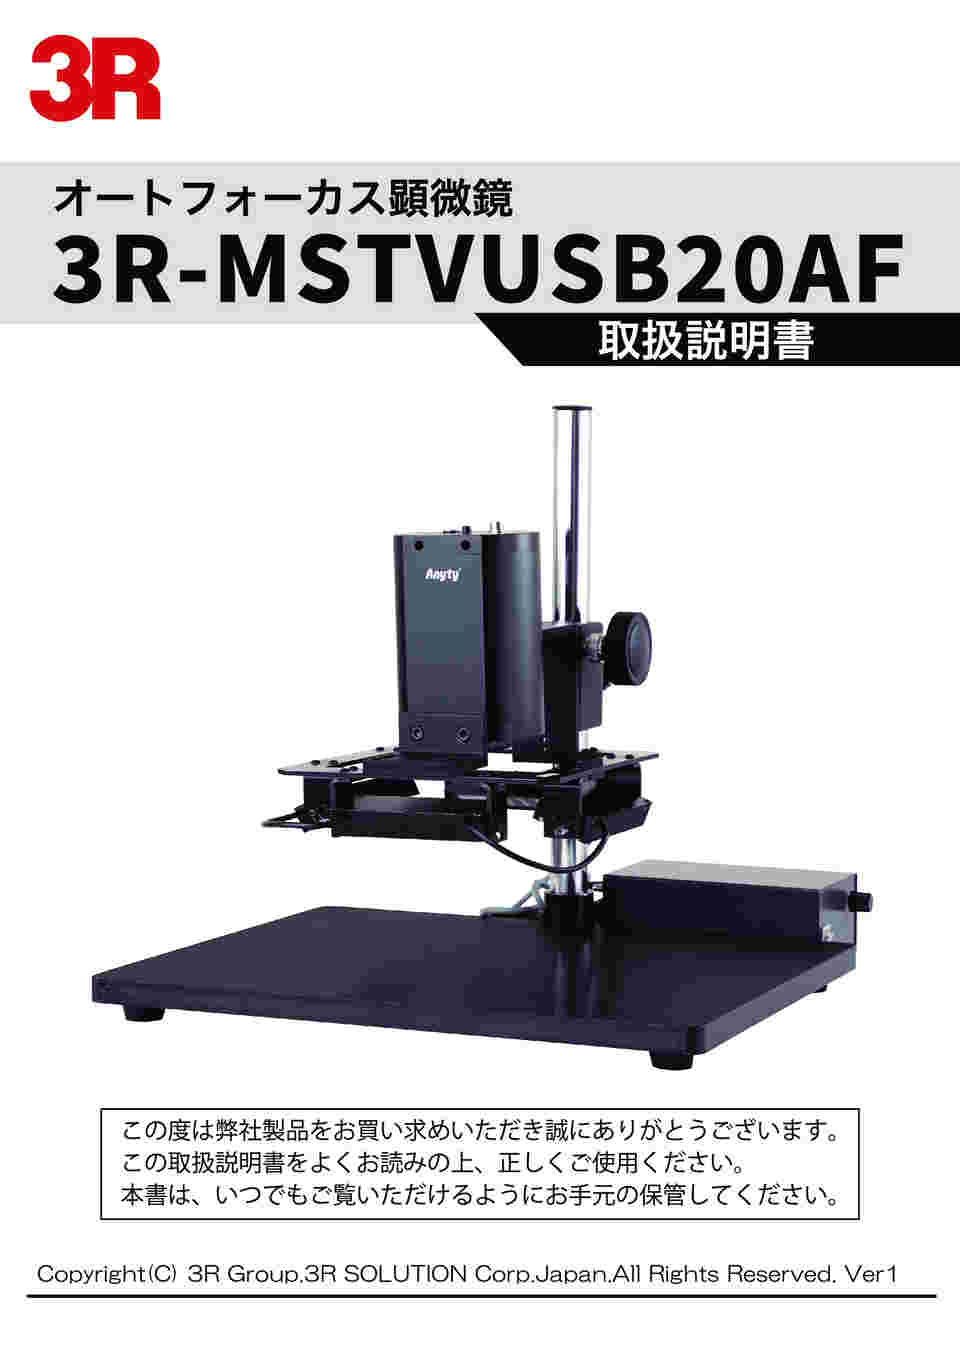 65-3730-57 オートフォーカス顕微鏡 3R-MSTVUSB20AF 【AXEL】 アズワン